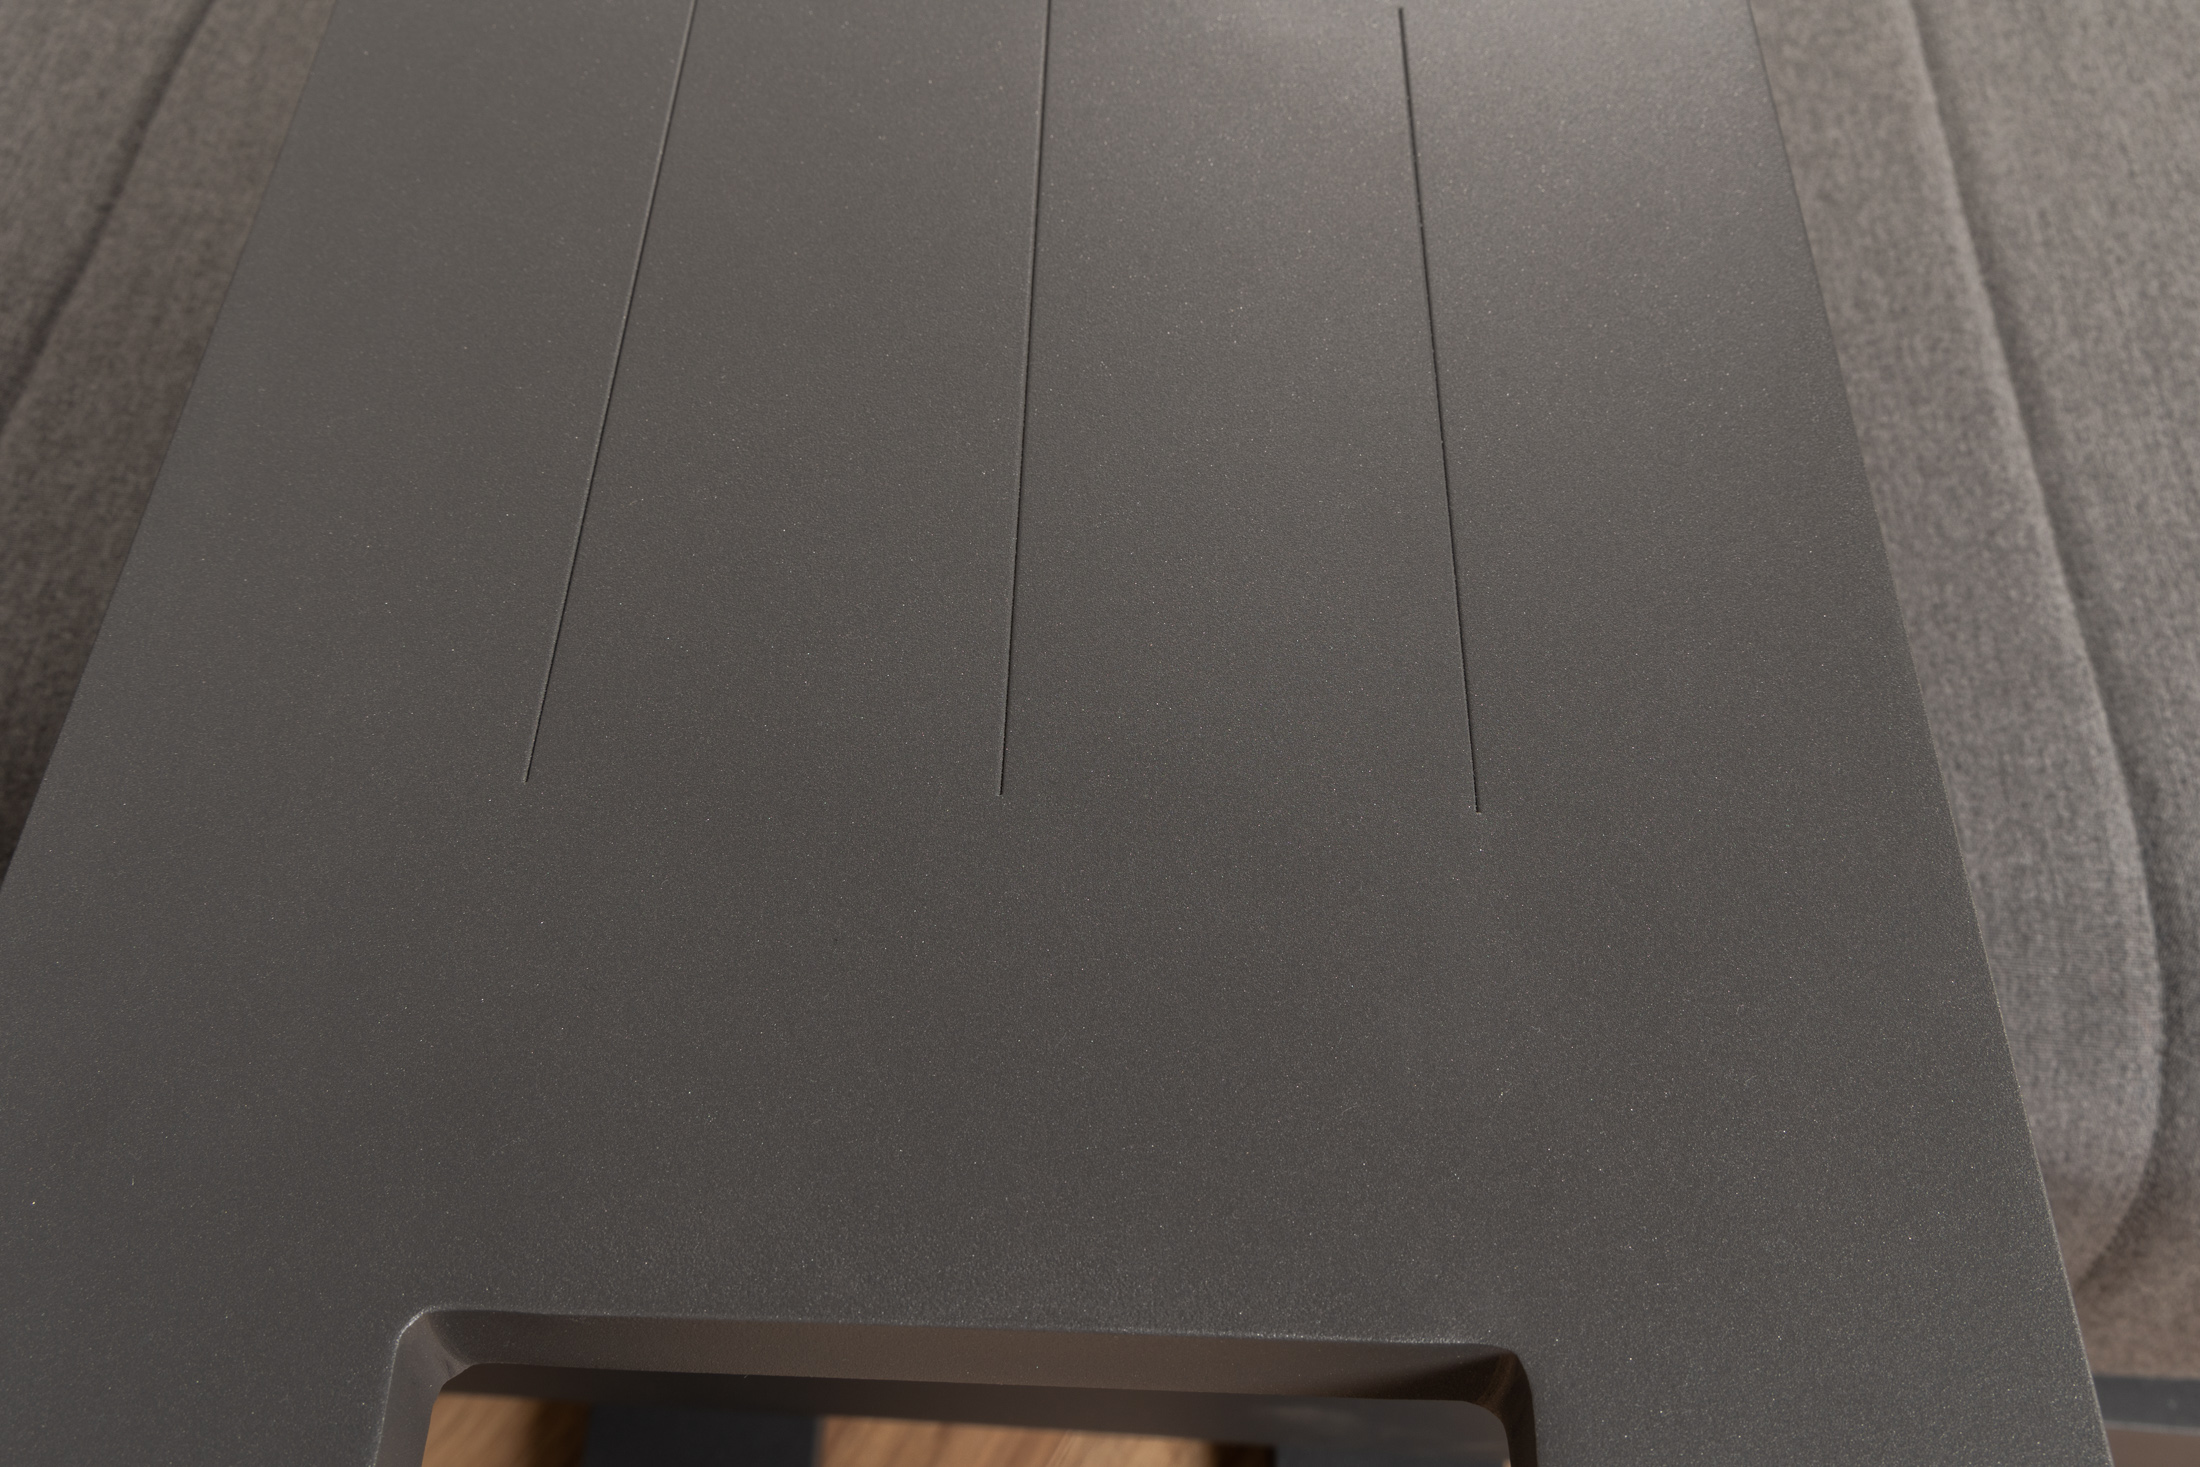 Sonnenliege Bite S - Breite 90 cm - gepolstert - Aluminium mit Sunbrella Bezug - anthrazit/dunkel grau